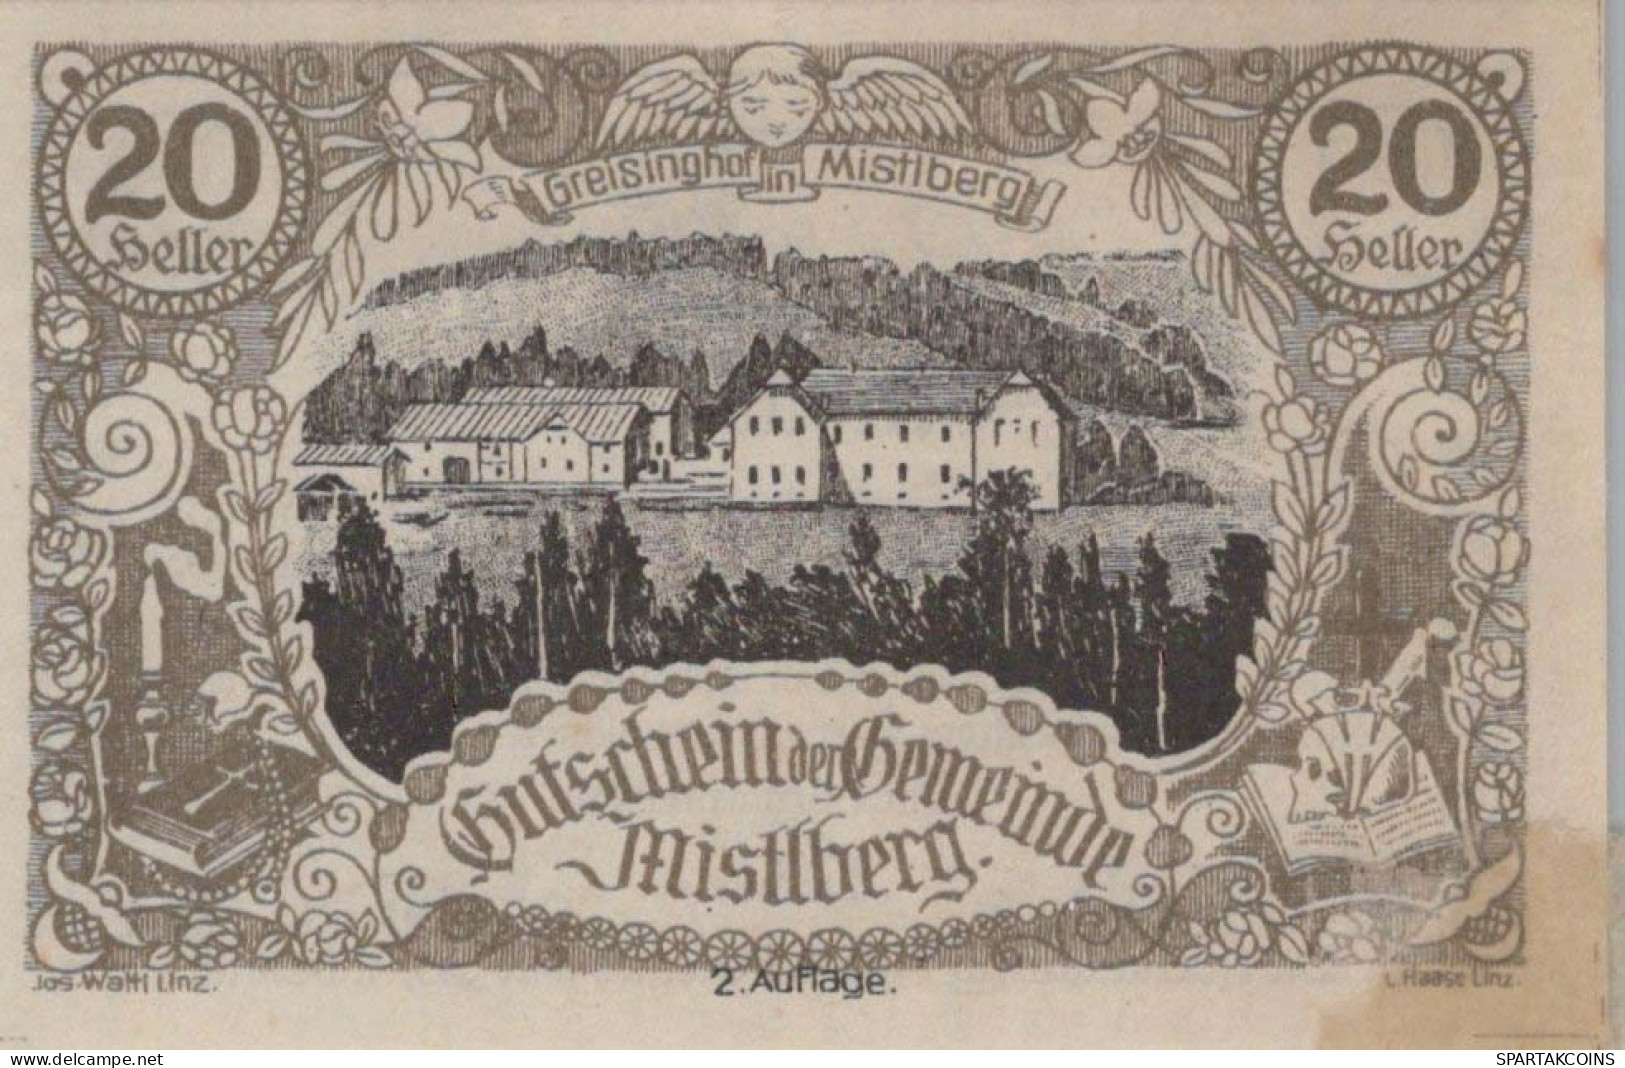 20 HELLER 1920 Stadt MISTLBERG Oberösterreich Österreich Notgeld Banknote #PD858 - [11] Local Banknote Issues